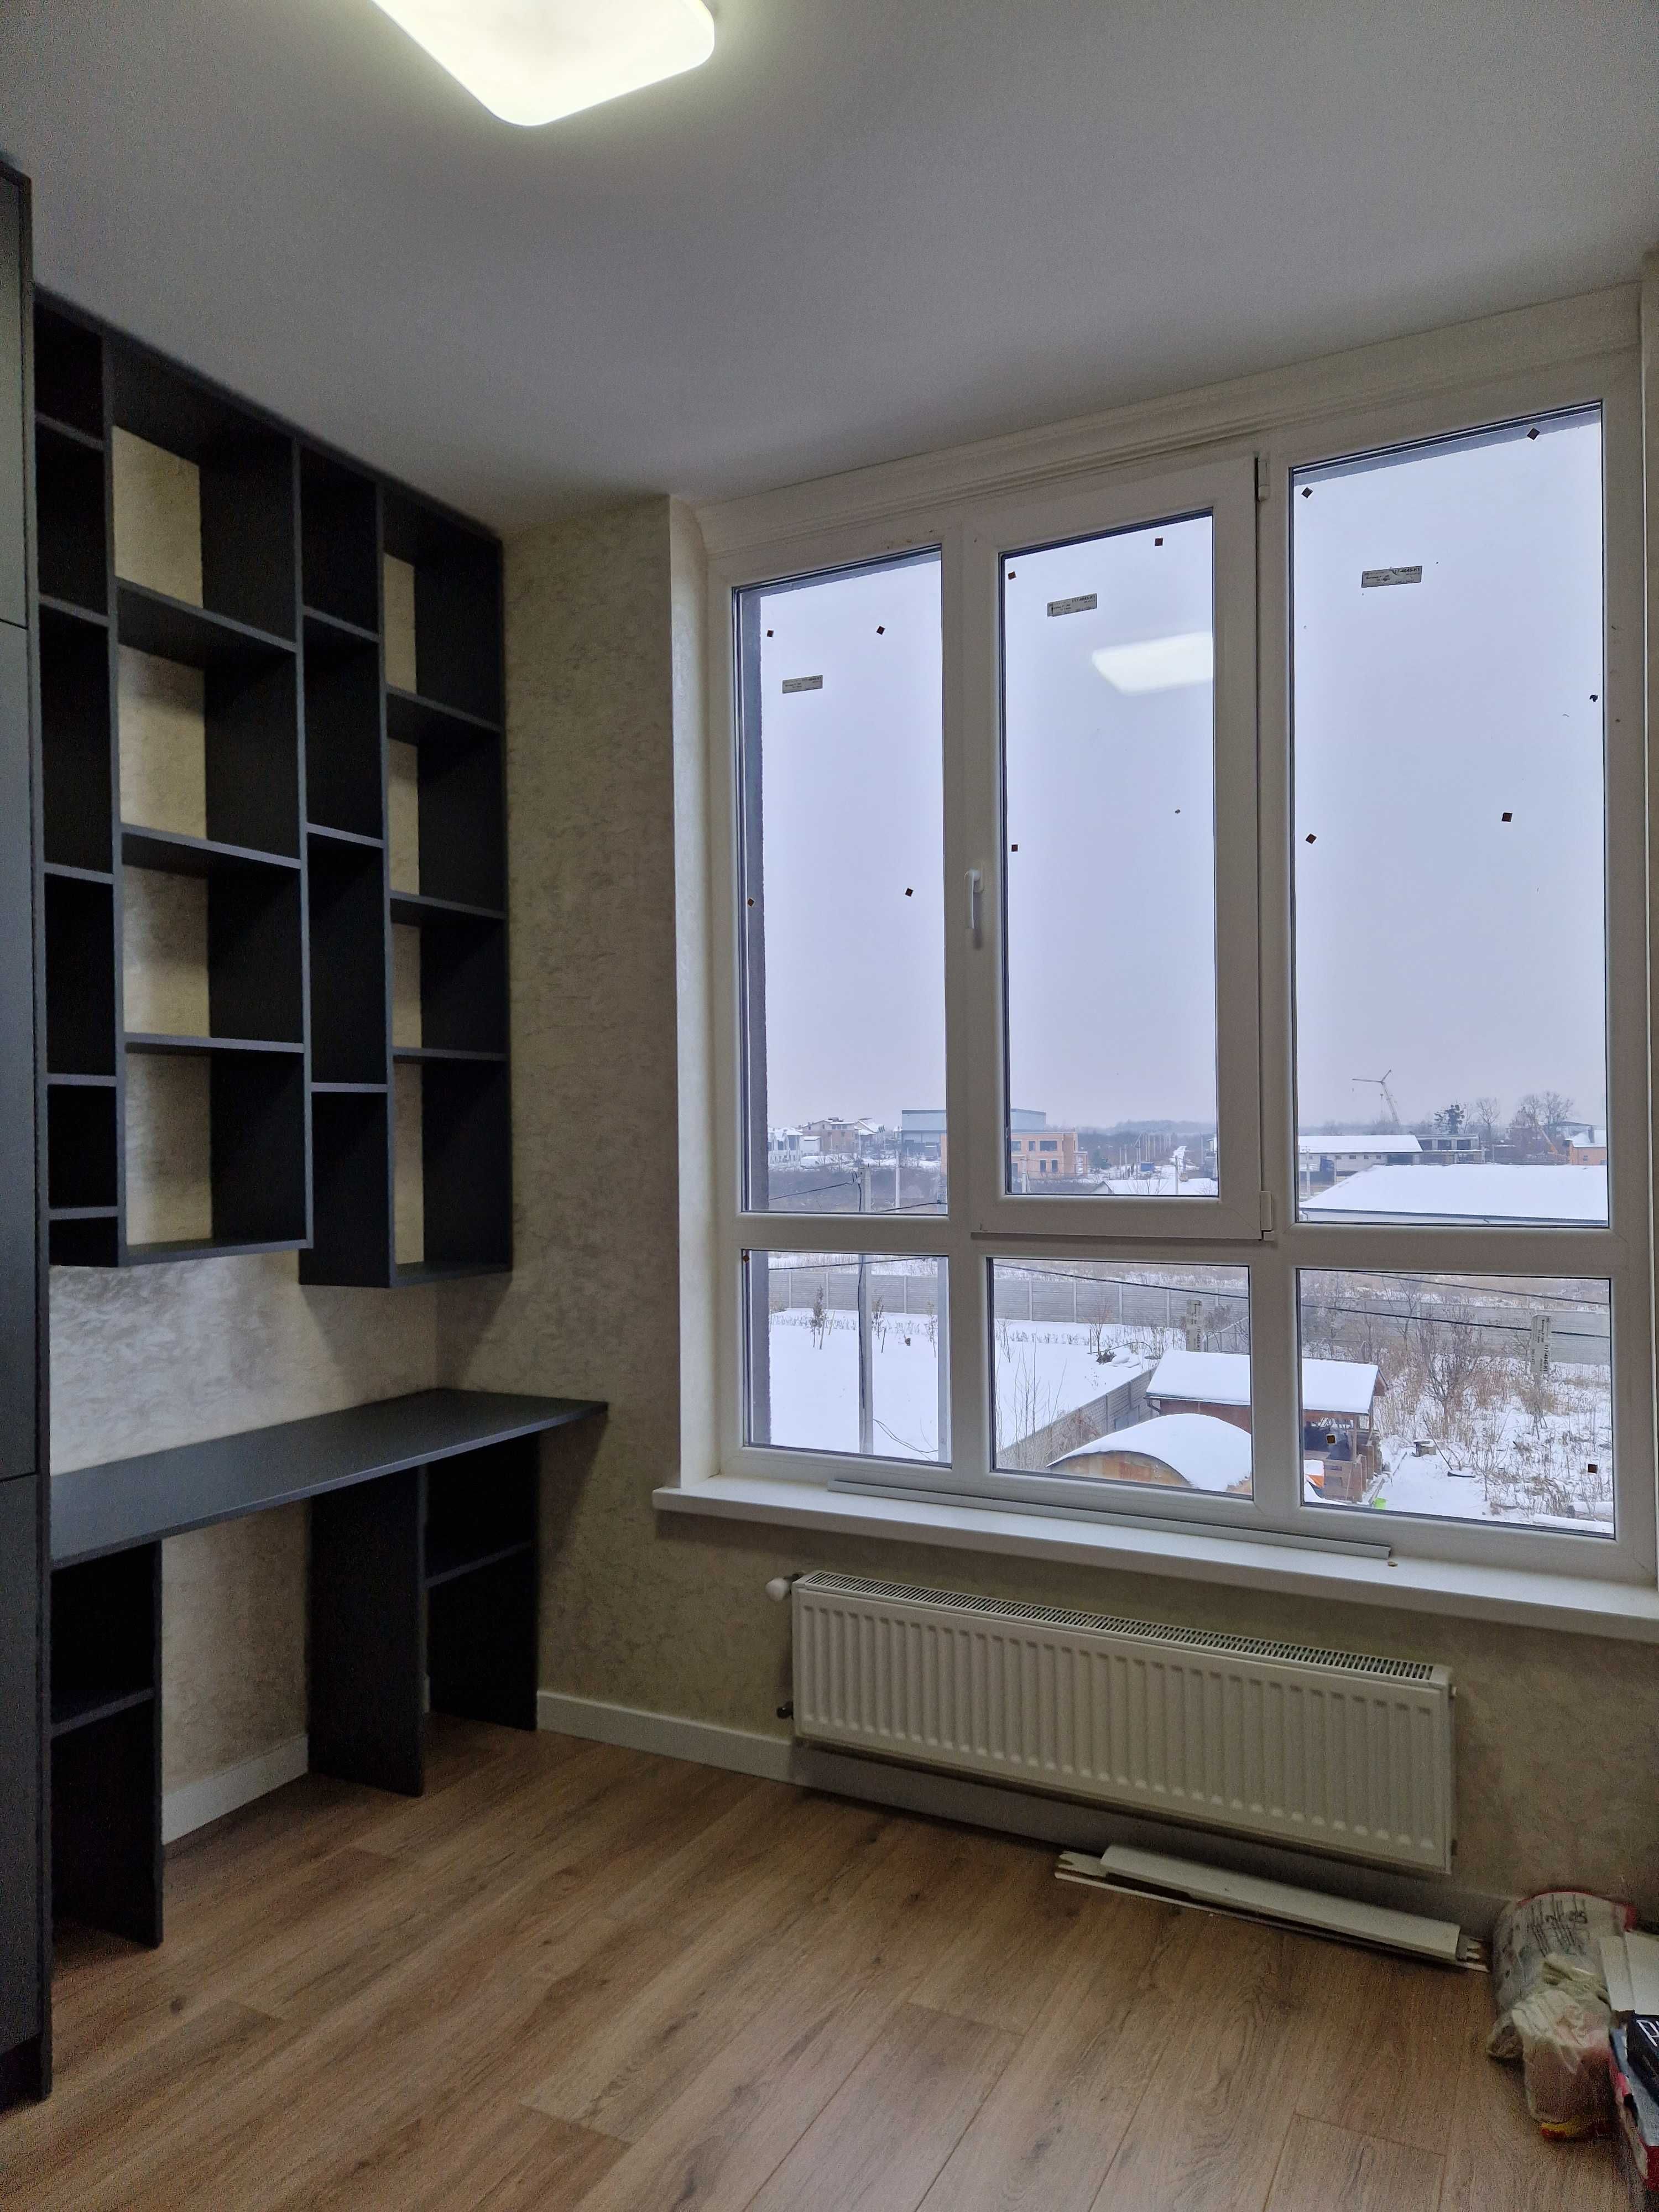 1-кiмнатна кв-ра з гардеробом, 48 кв в новобудовi в Петроп Борщагiвцi